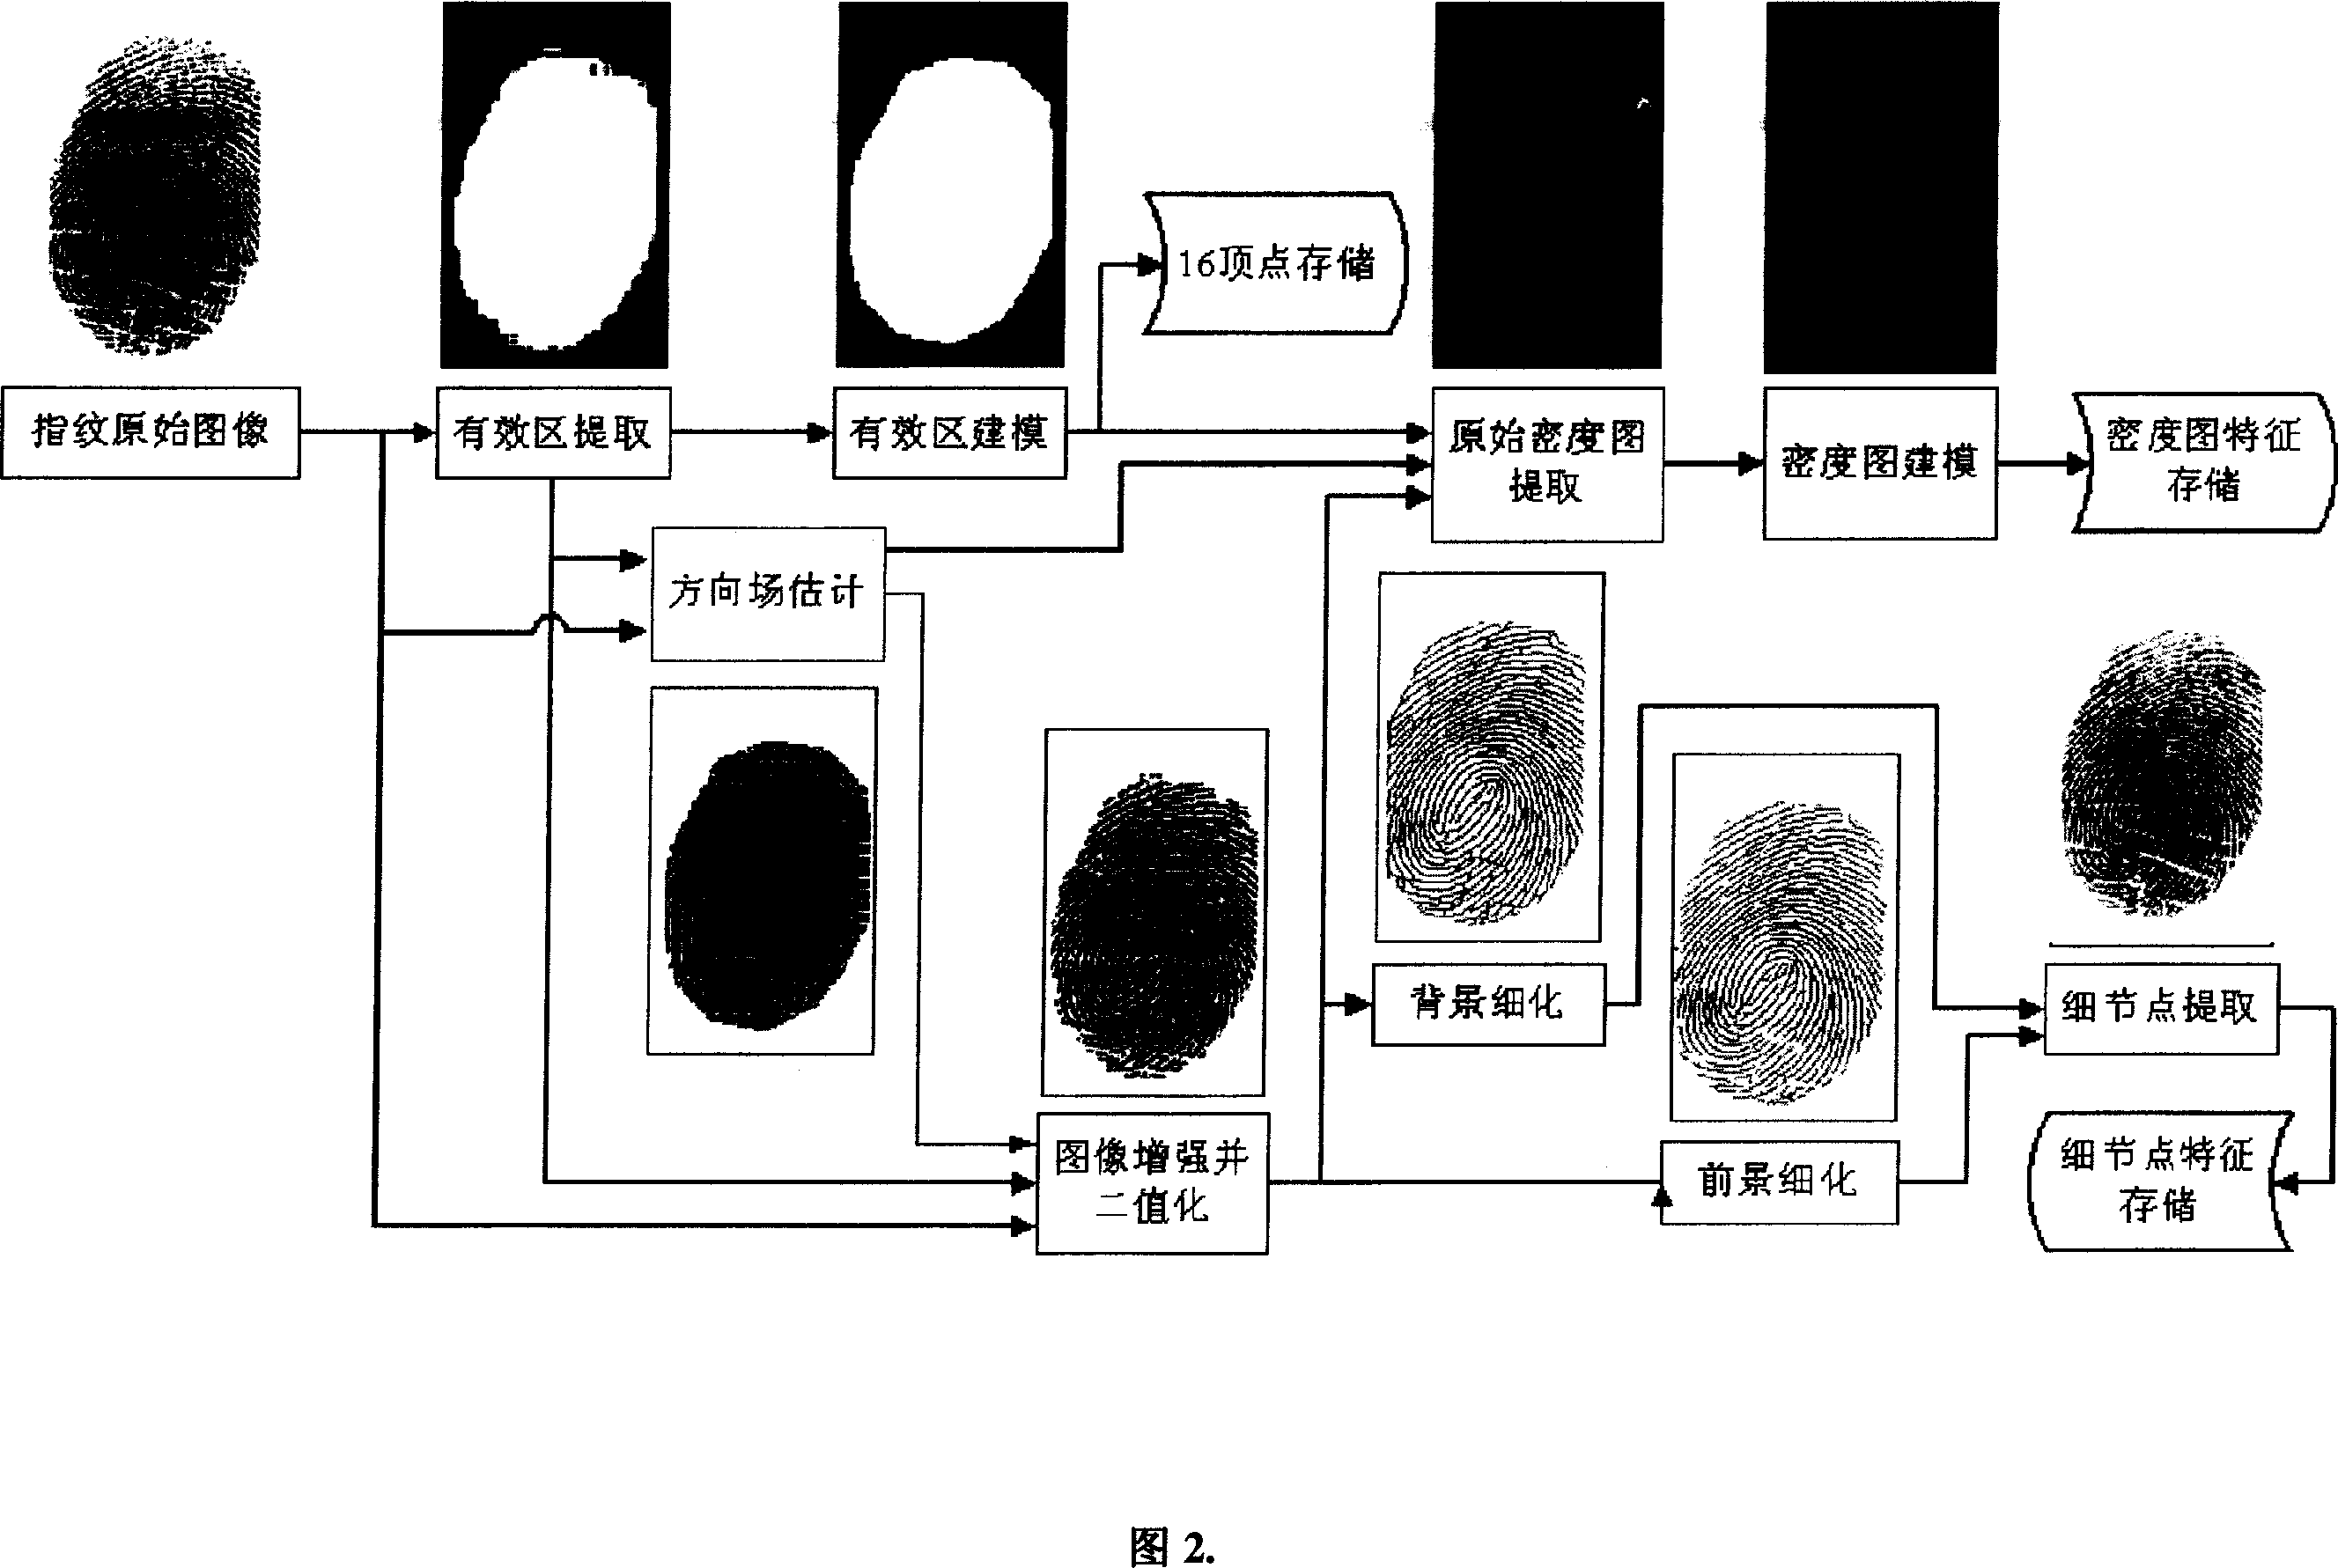 Fingerprint identification method based on density chart model